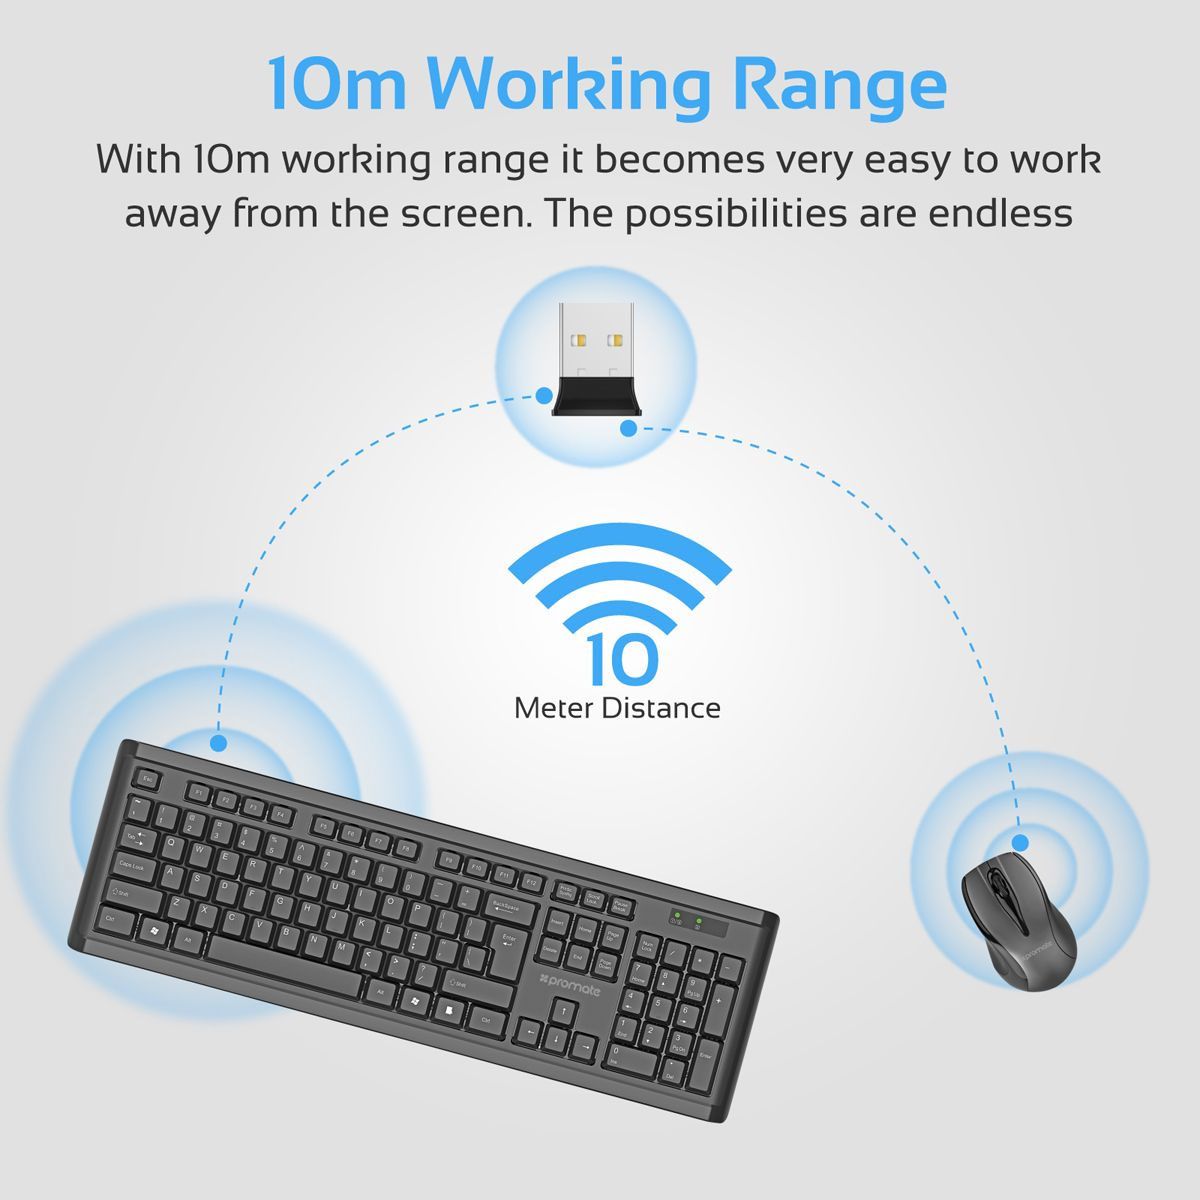 Promate Procombo-12 Sleek Profile Full Size Wireless Keyboard & Mouse –